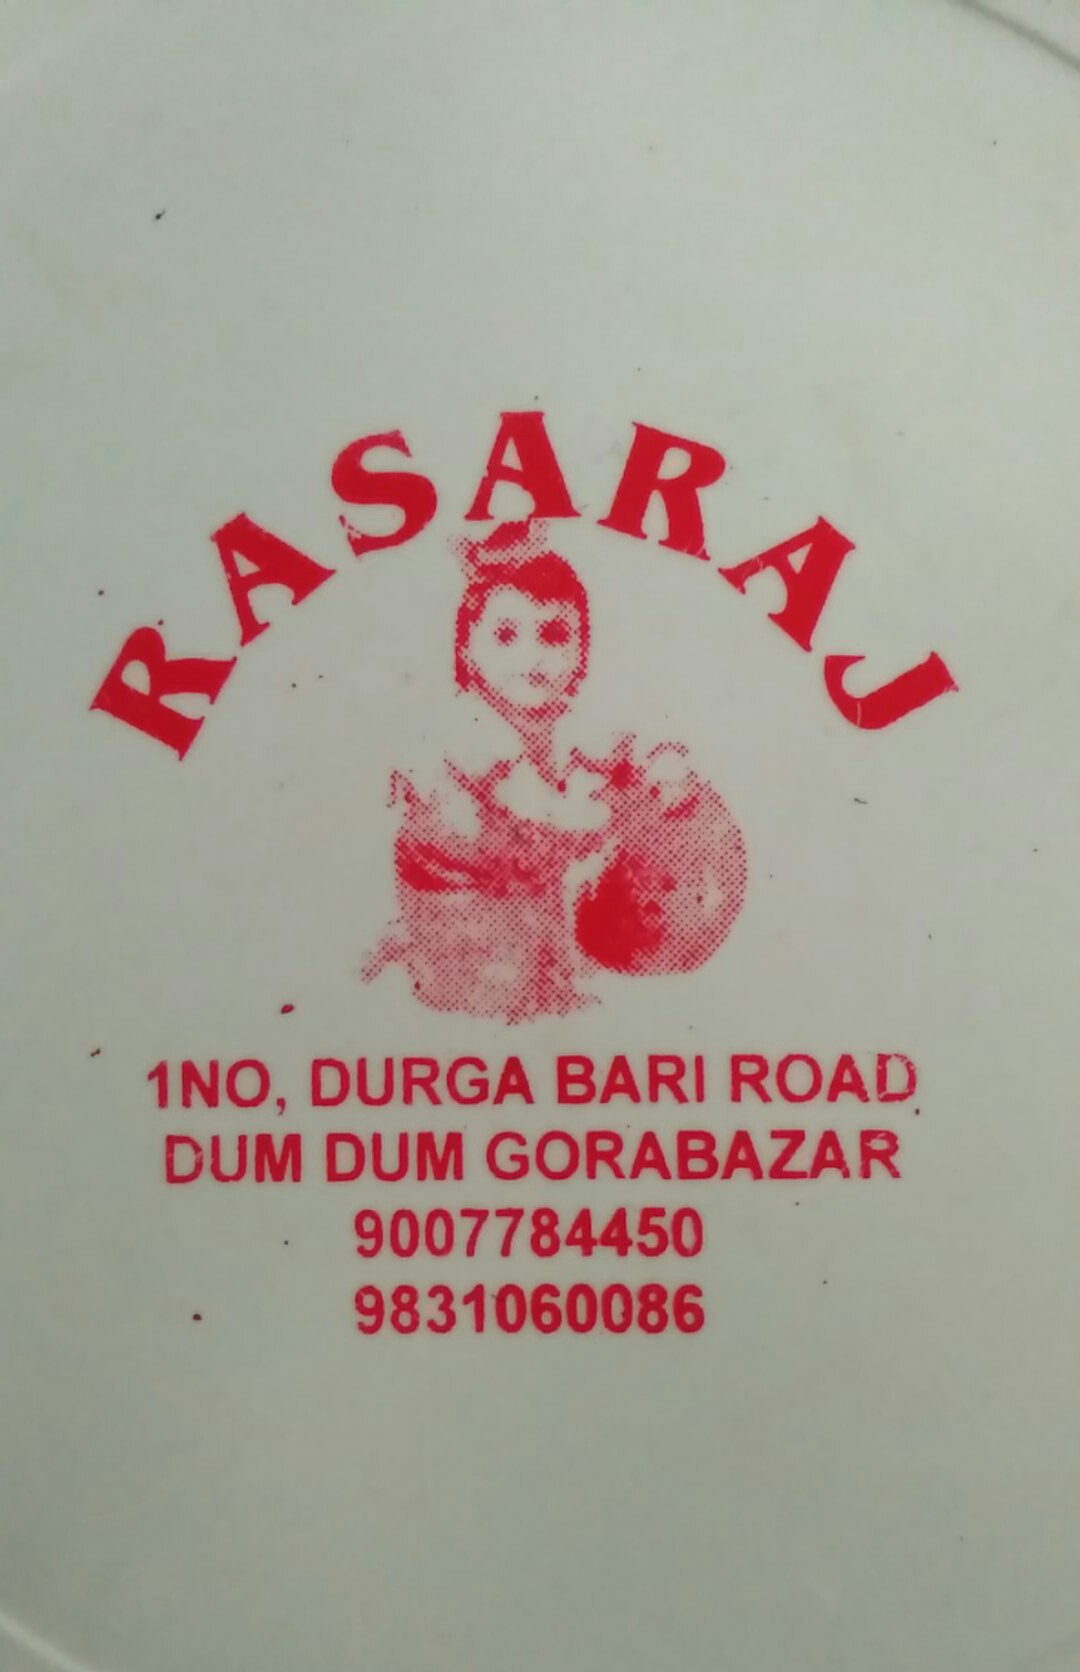 Rasaraj